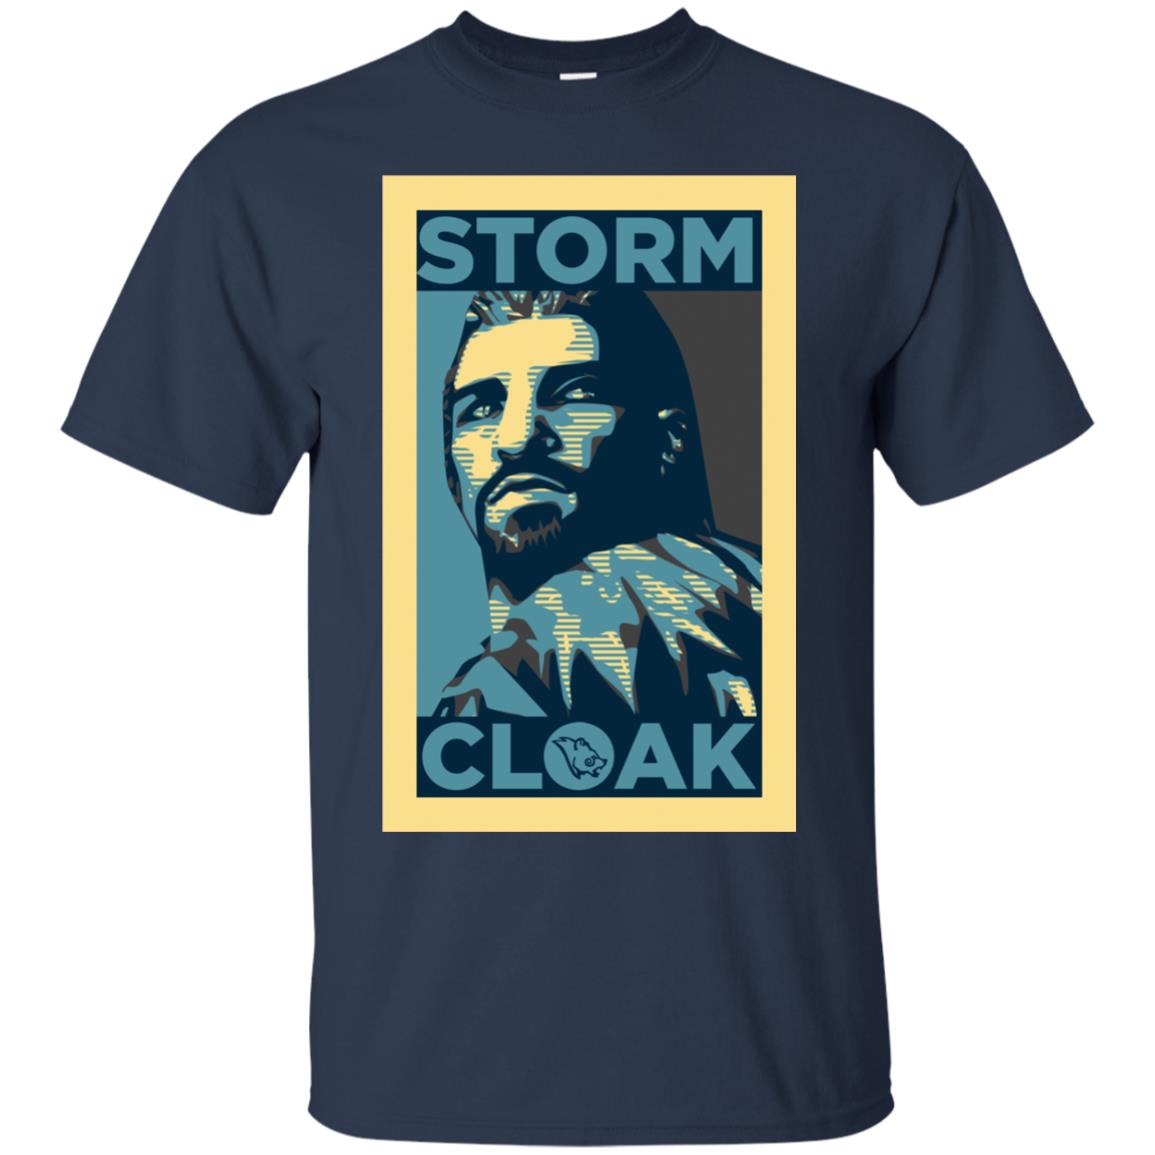 stormcloak t shirt - navy blue